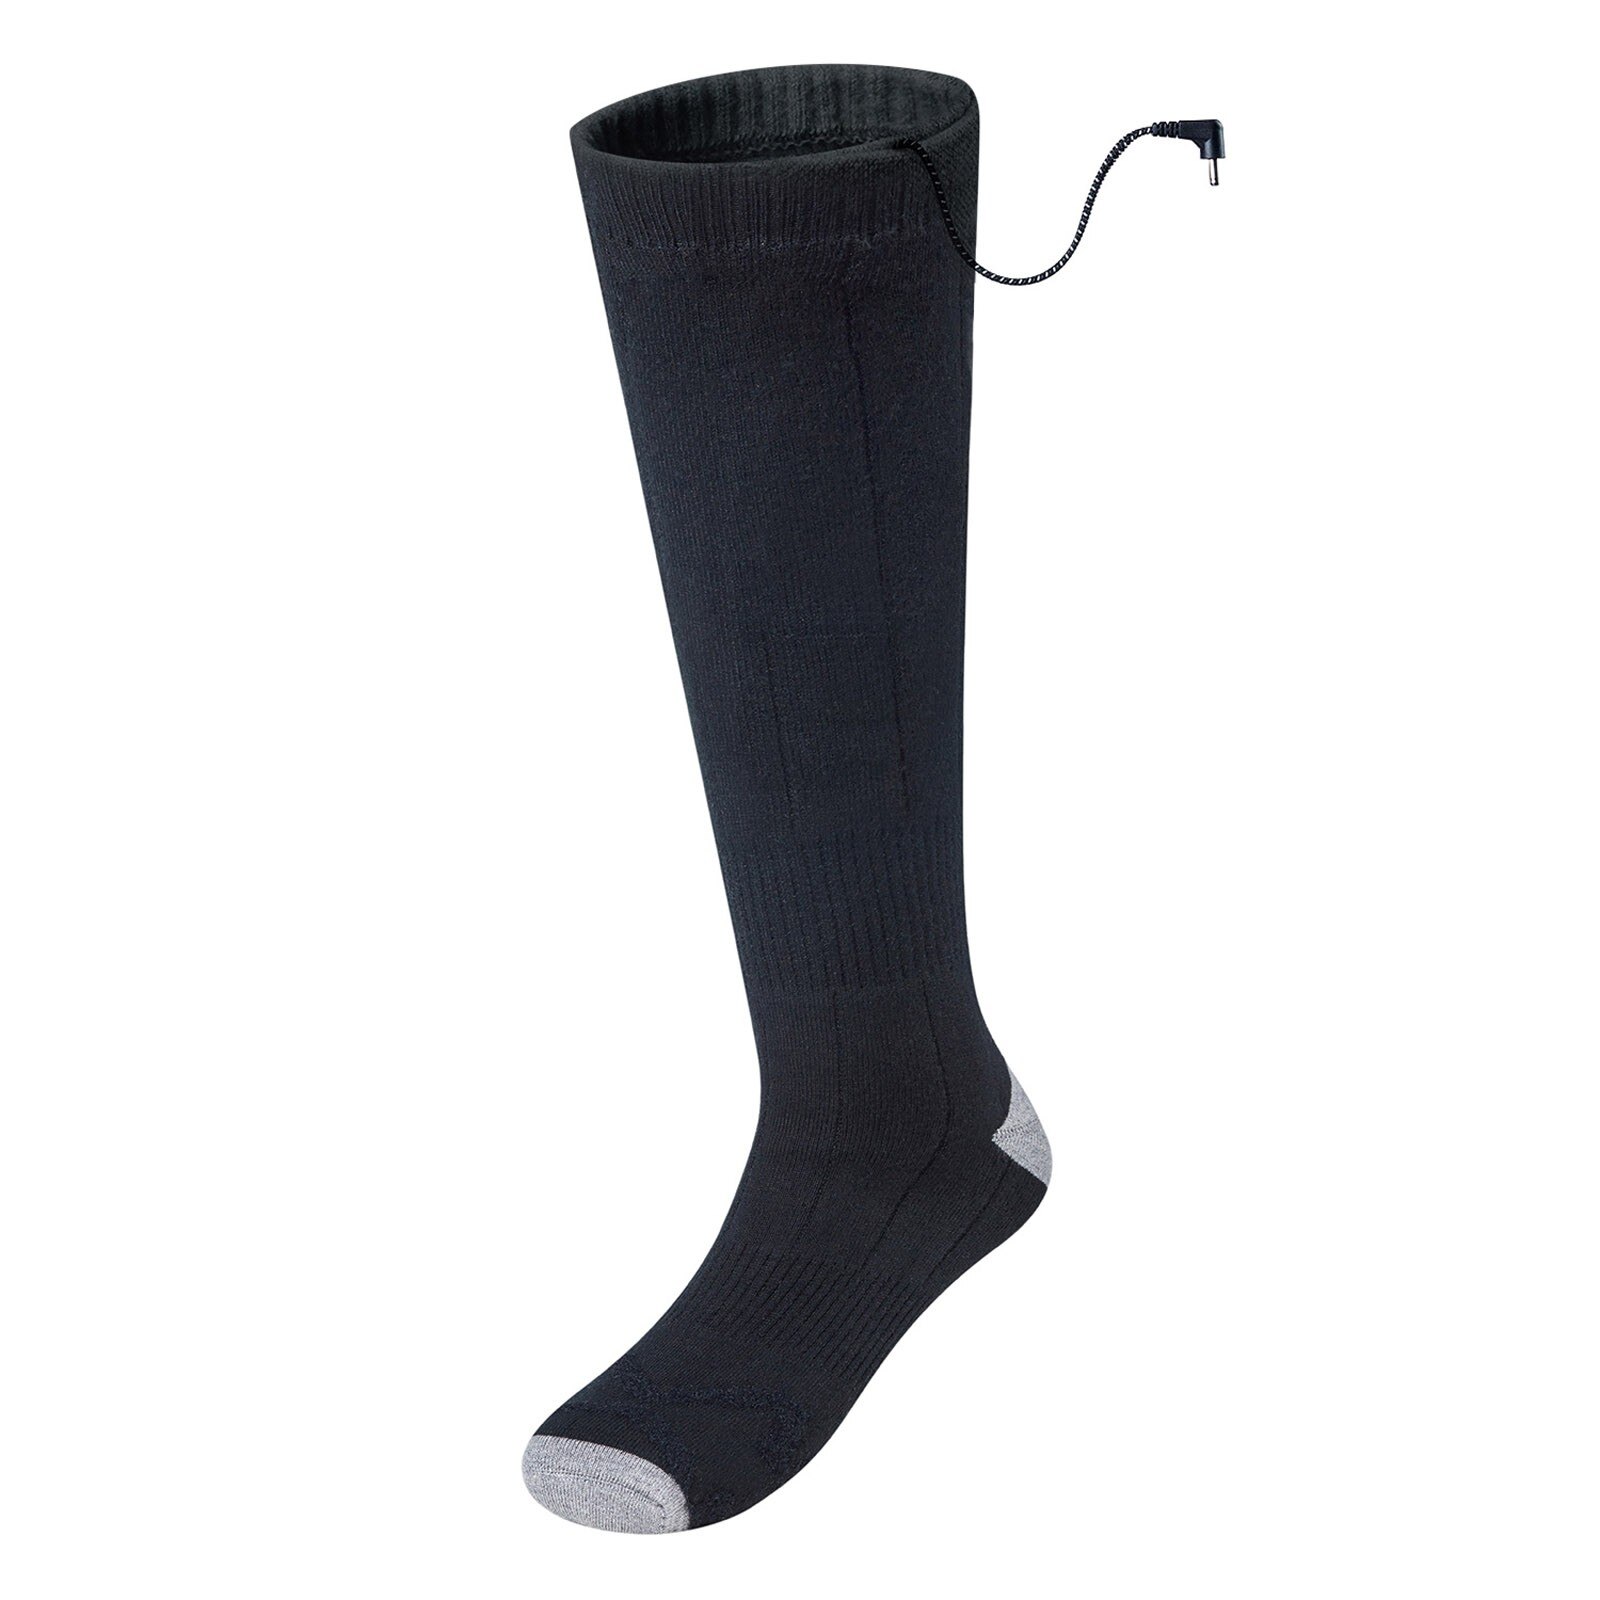 Calzino riscaldante tre modalità elastico confortevole resistente elettrico calzino caldo Set calzini riscaldati ricaricabili per uomo donna # G30: Black